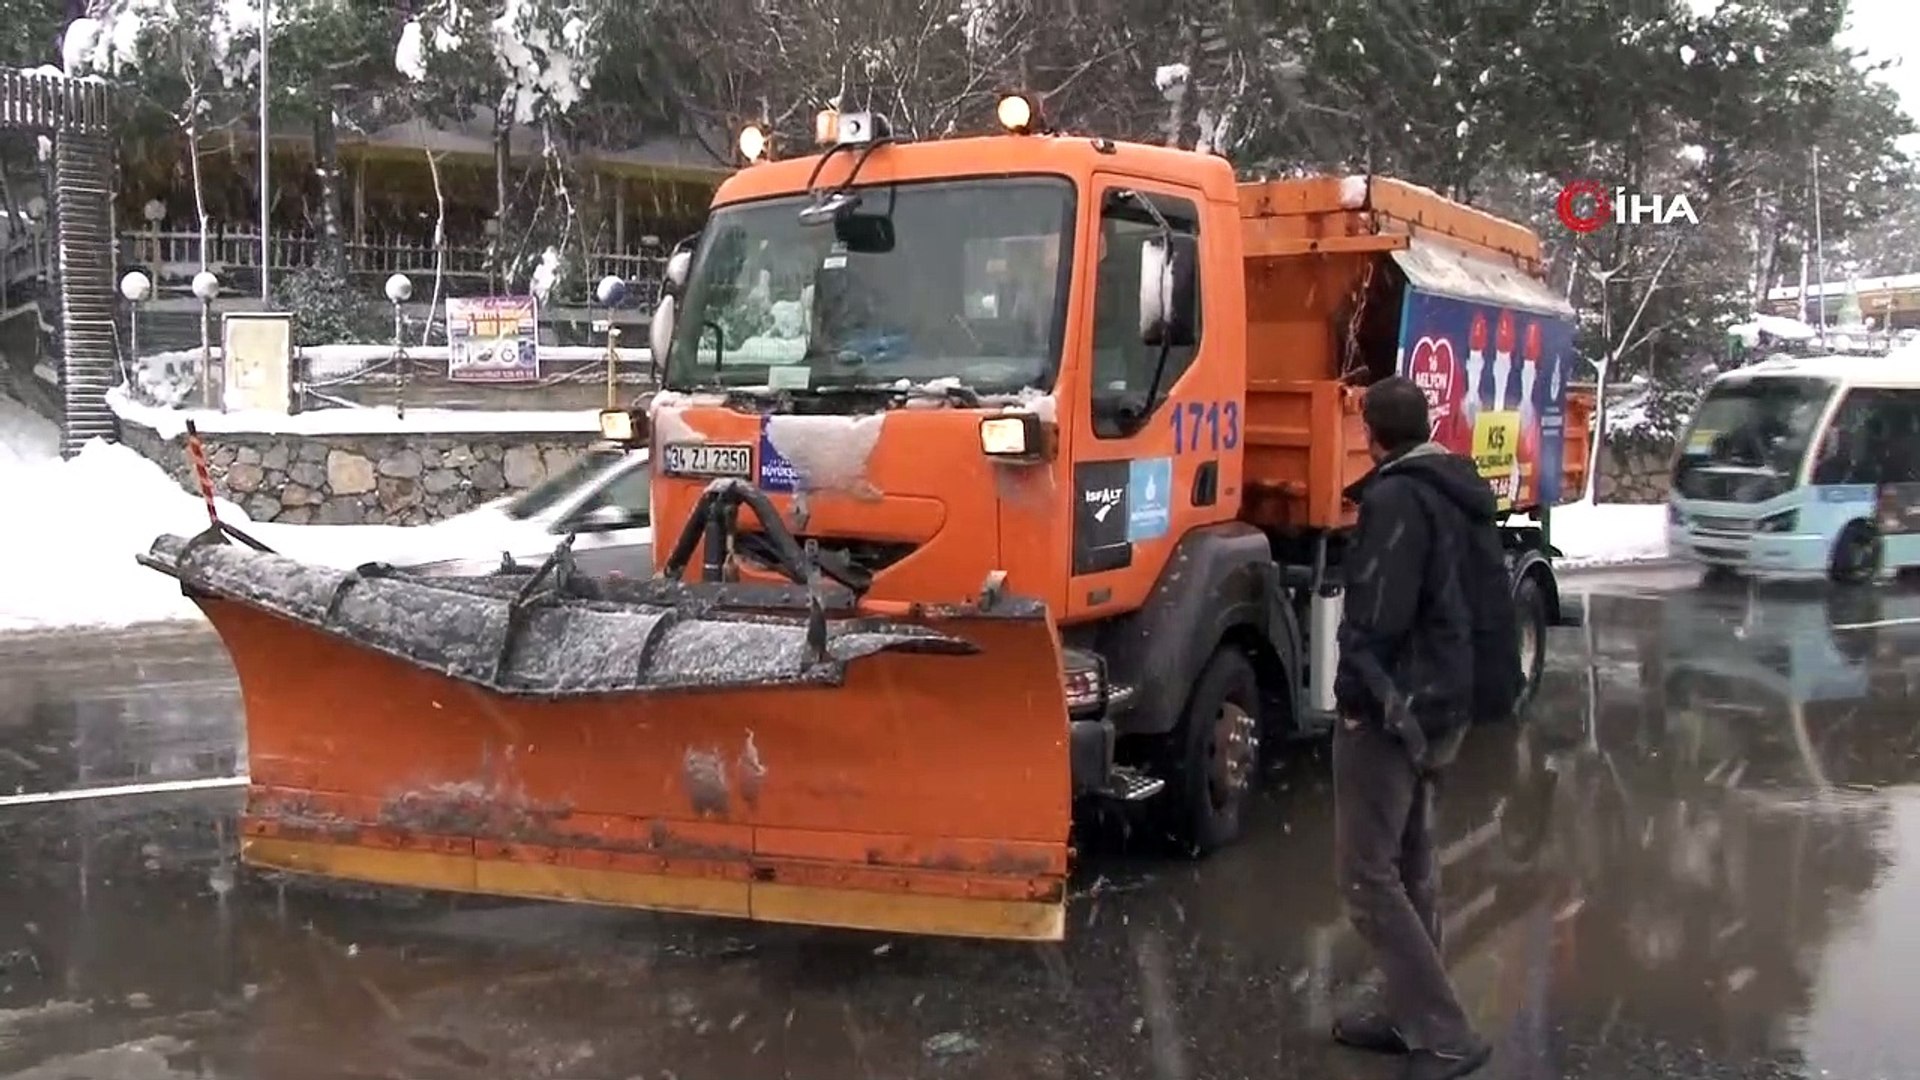 Kar küreme aracı ile otomobil çarpıştı... Belediye şoföründen sürücüye:  'Belediyenin aracı bir şey olmaz, ben sana üzüldüm' - Dailymotion Video